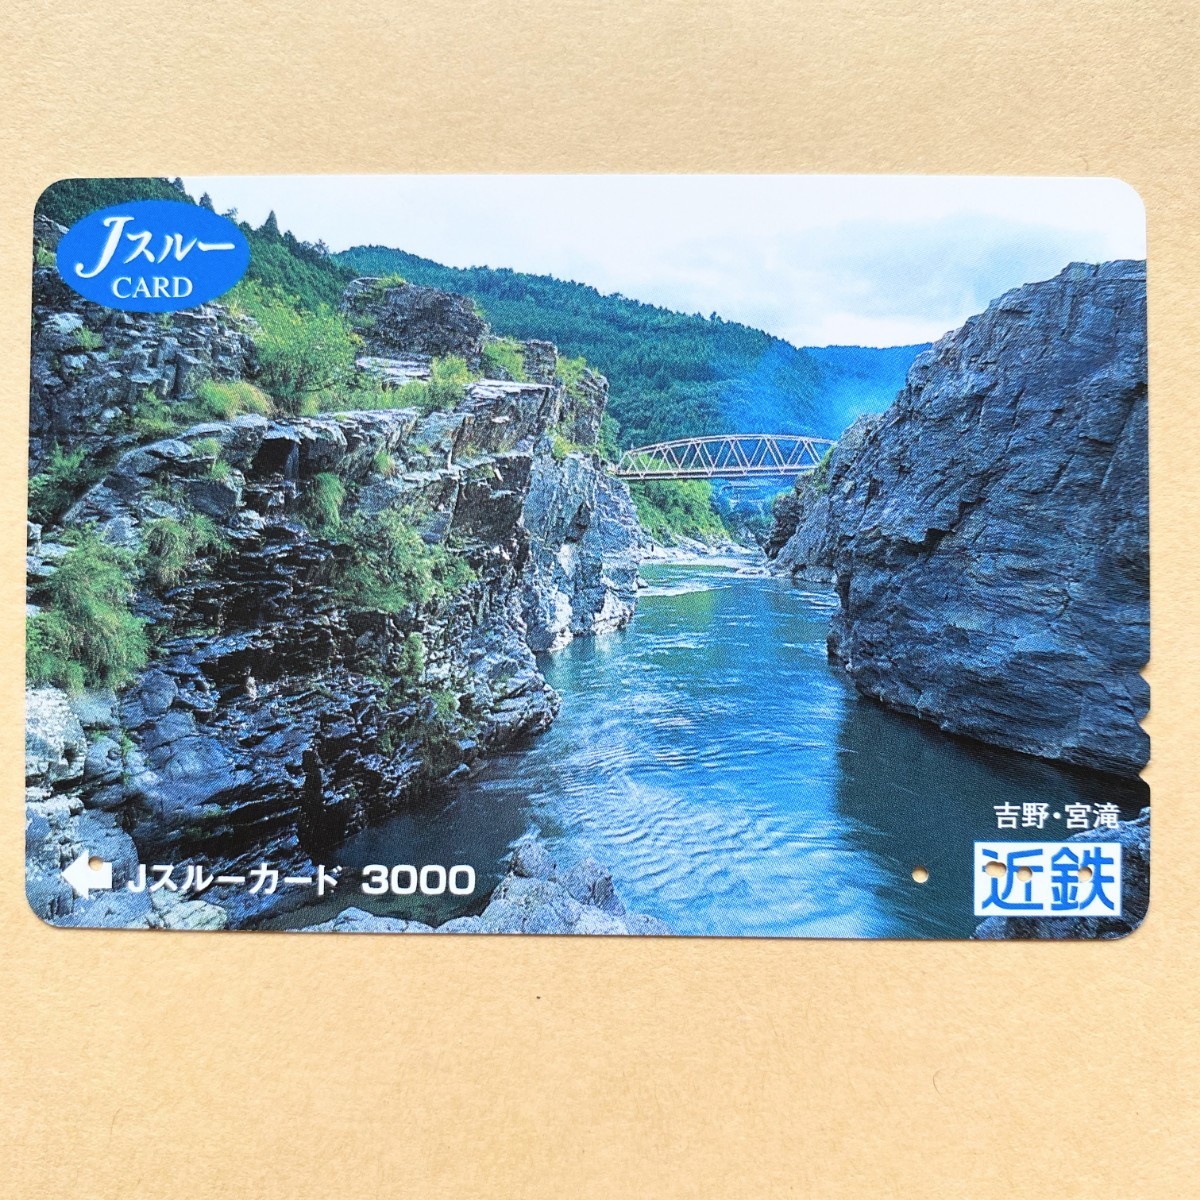 [ использованный ] Js Roo карта близко металлический Kinki Япония железная дорога Yoshino *..